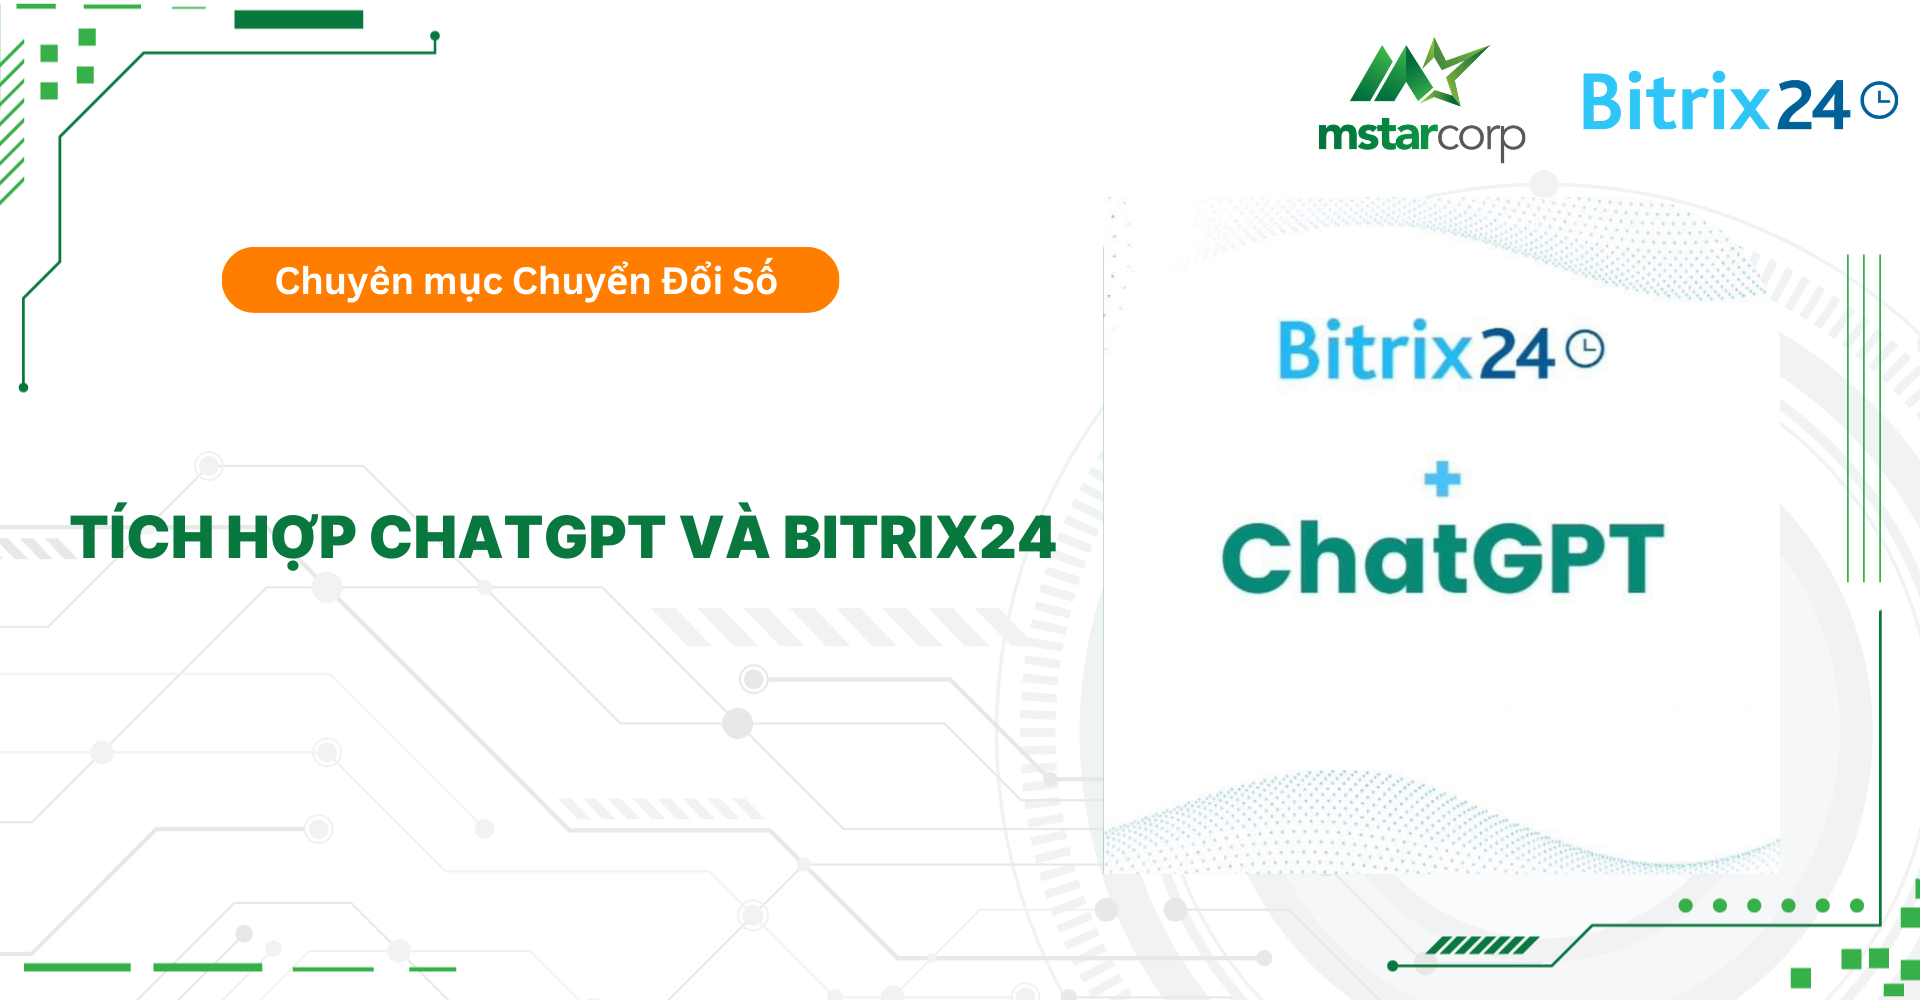 Tích hợp ChatGPT và Bitrix24